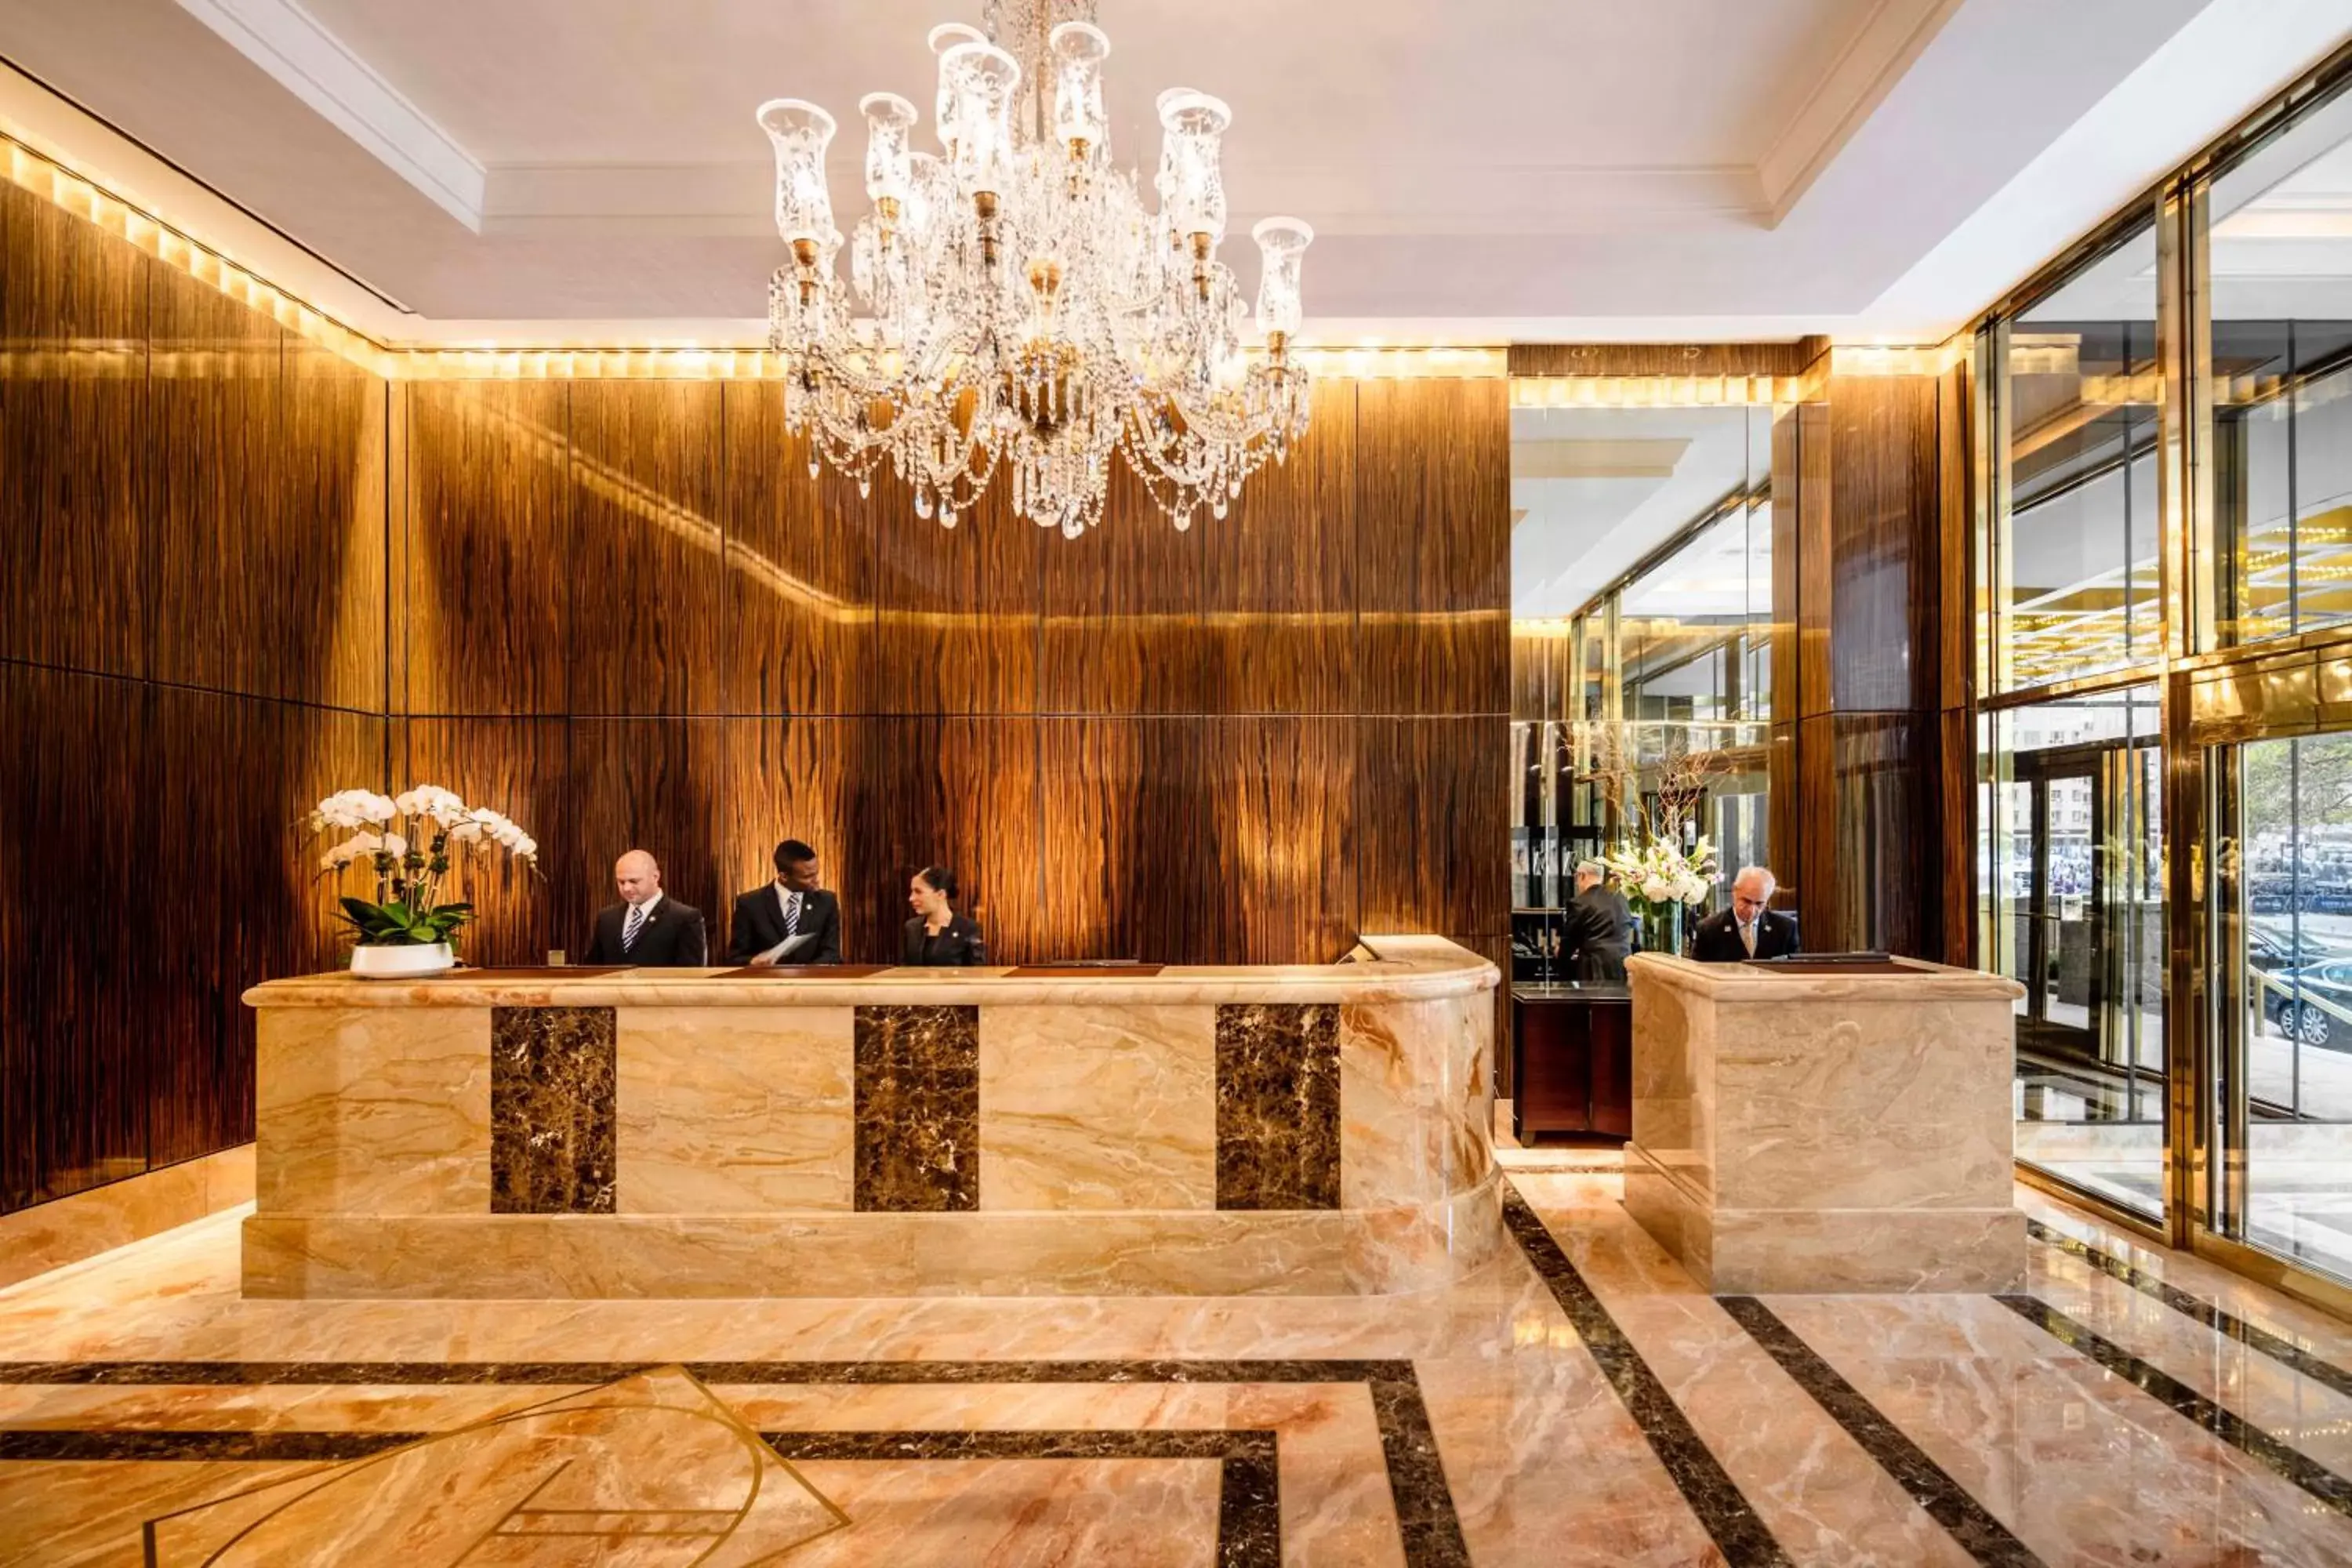 Lobby or reception, Lobby/Reception in Trump International New York